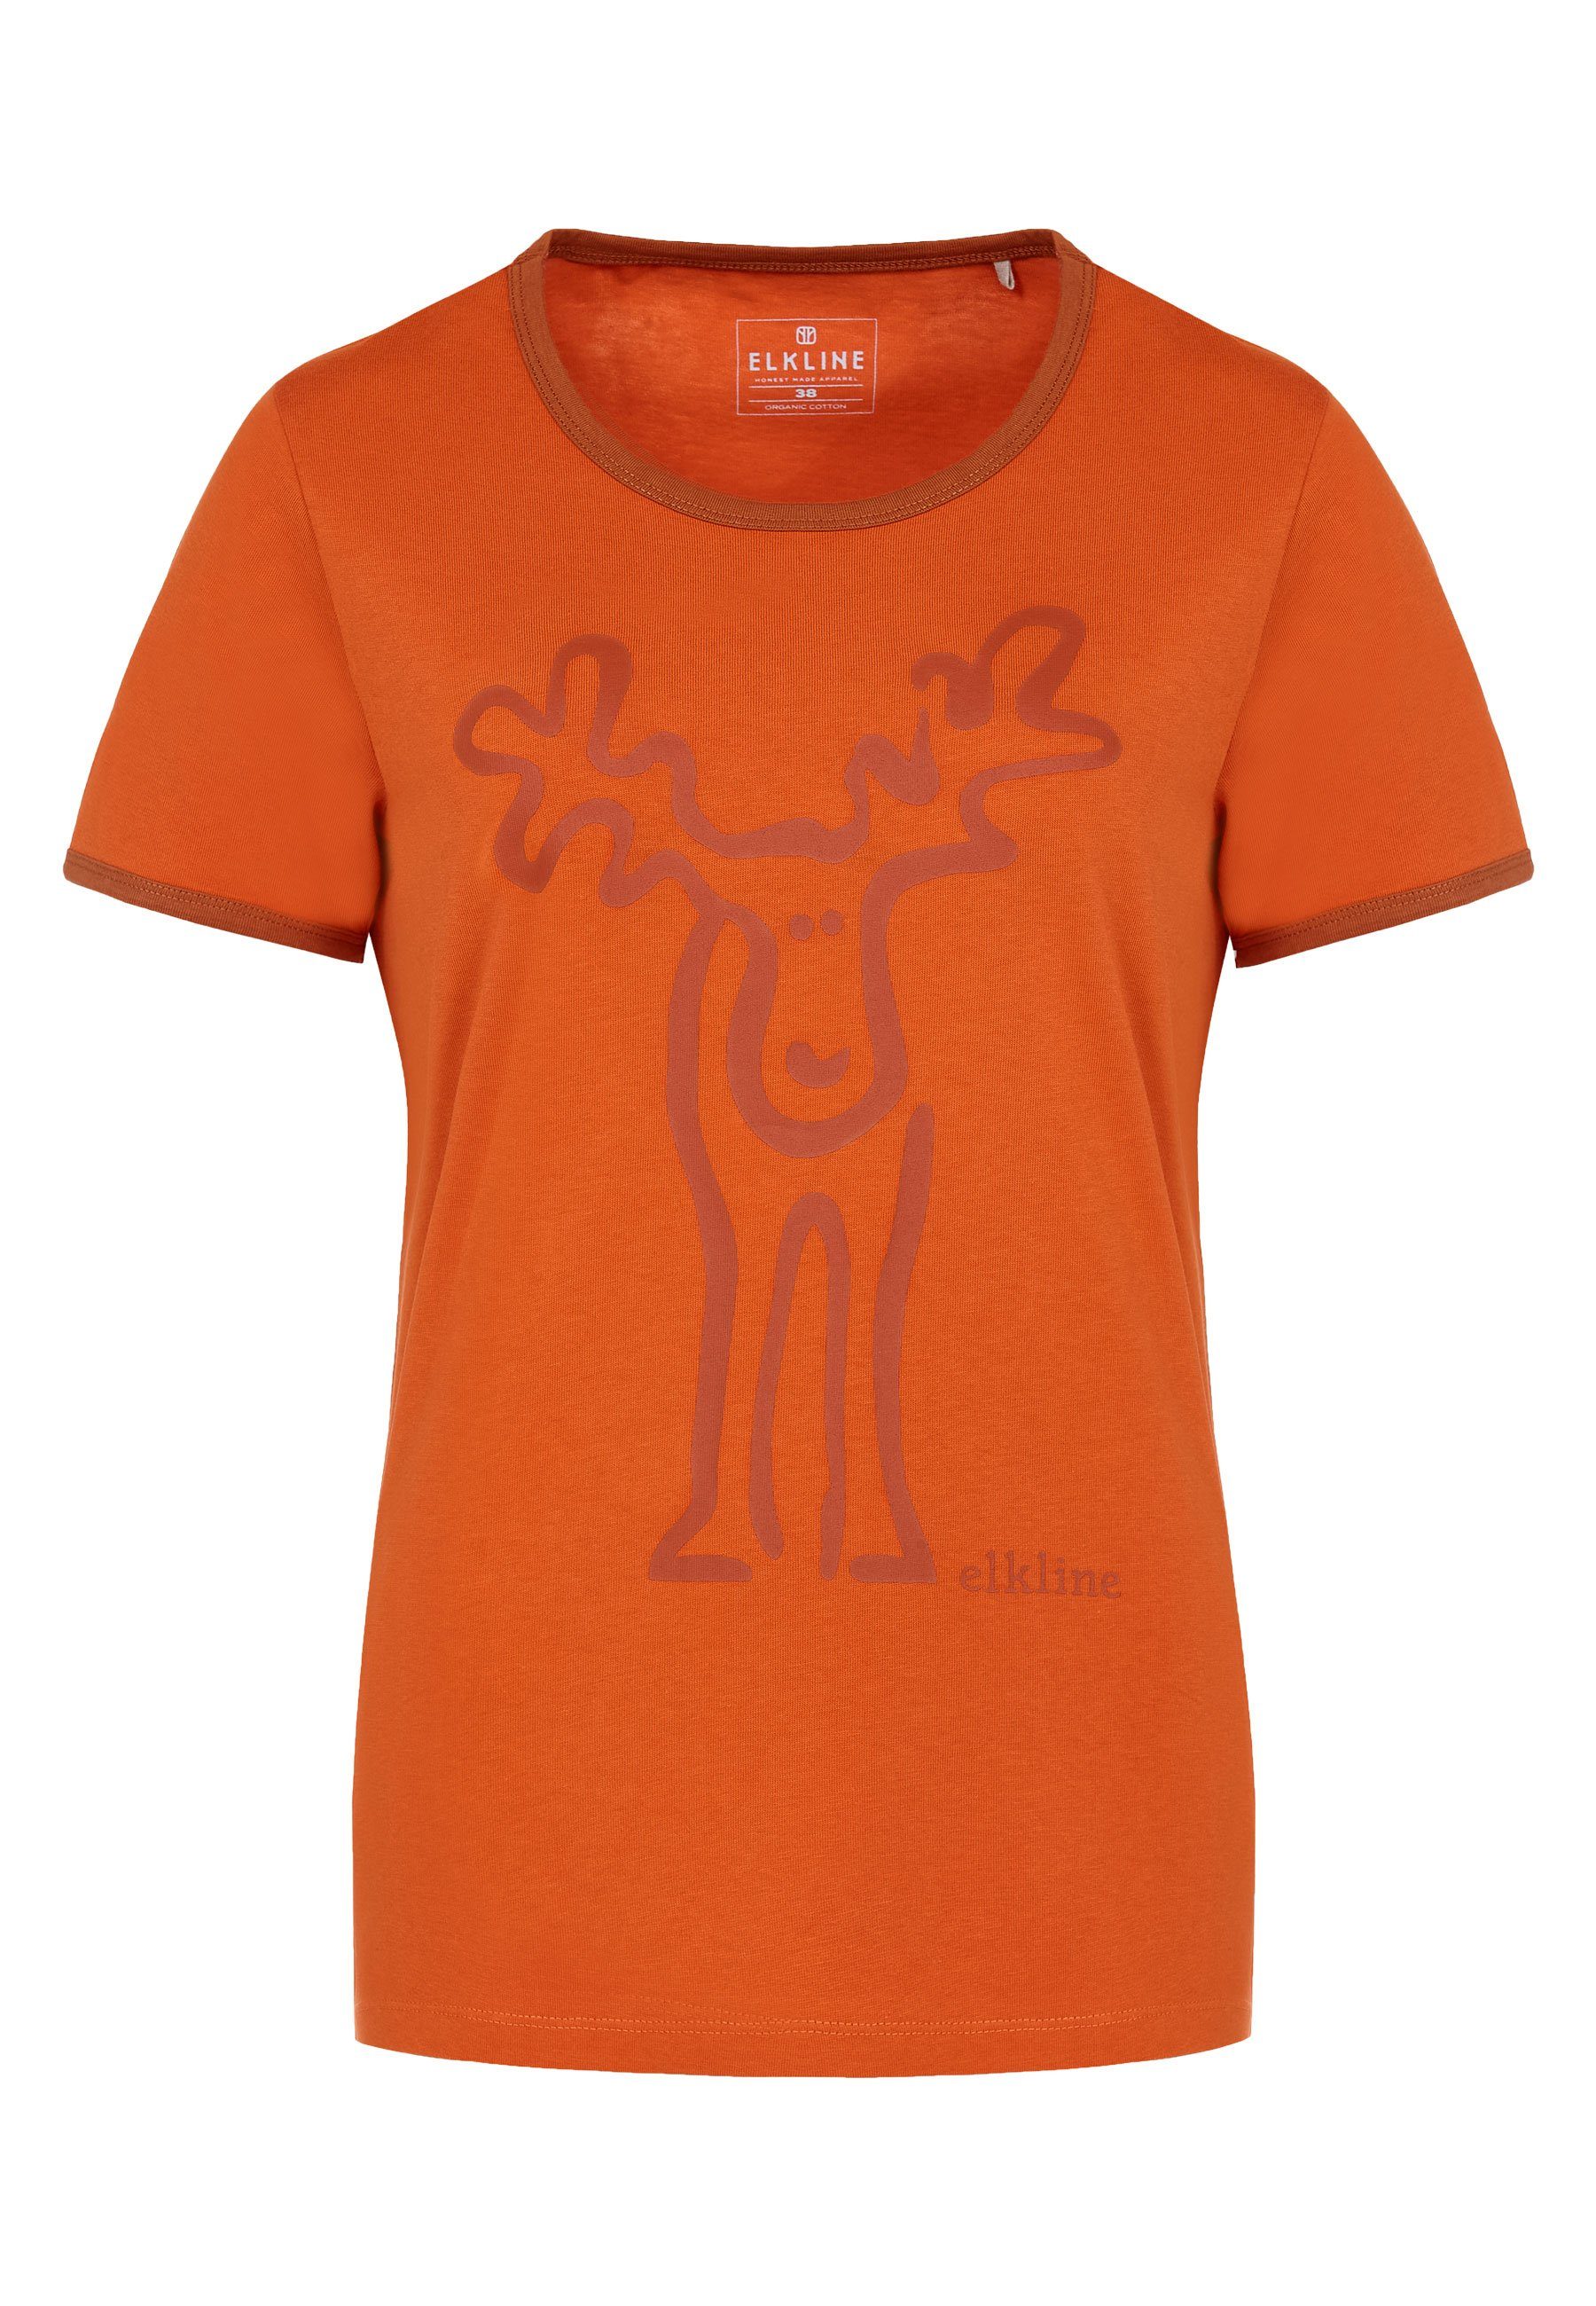 Elkline orange Brust T-Shirt Print Rudolfine rust - darkorange Rücken Elch Retro und